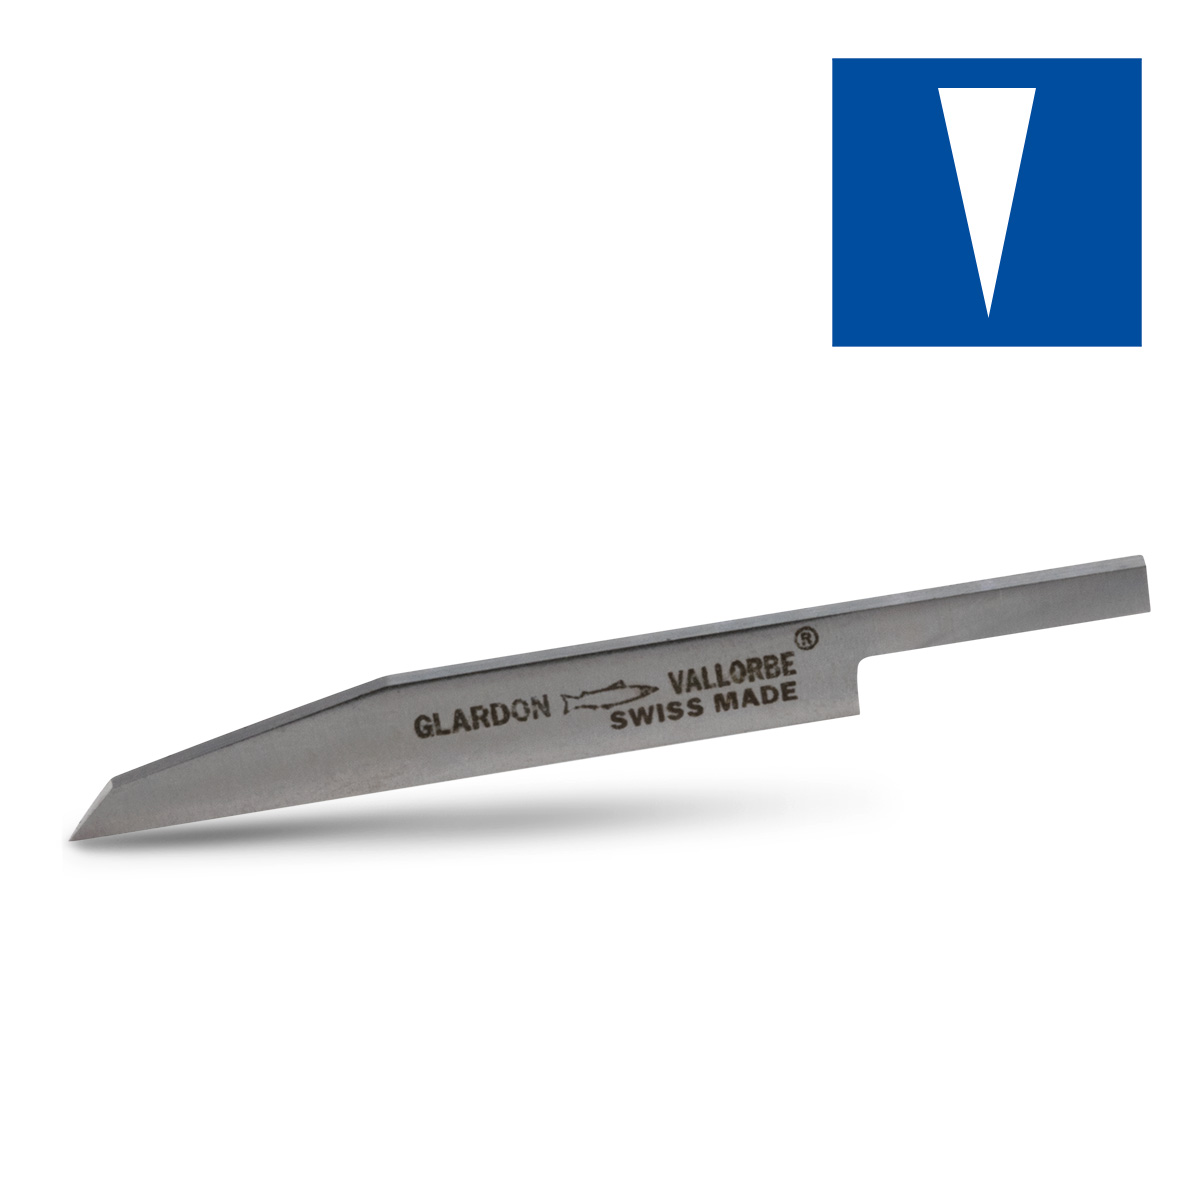 HSS graver, mes, breedte 1,8 mm, lengte 55 mm, voor klauwplaat Ø 3,2 mm